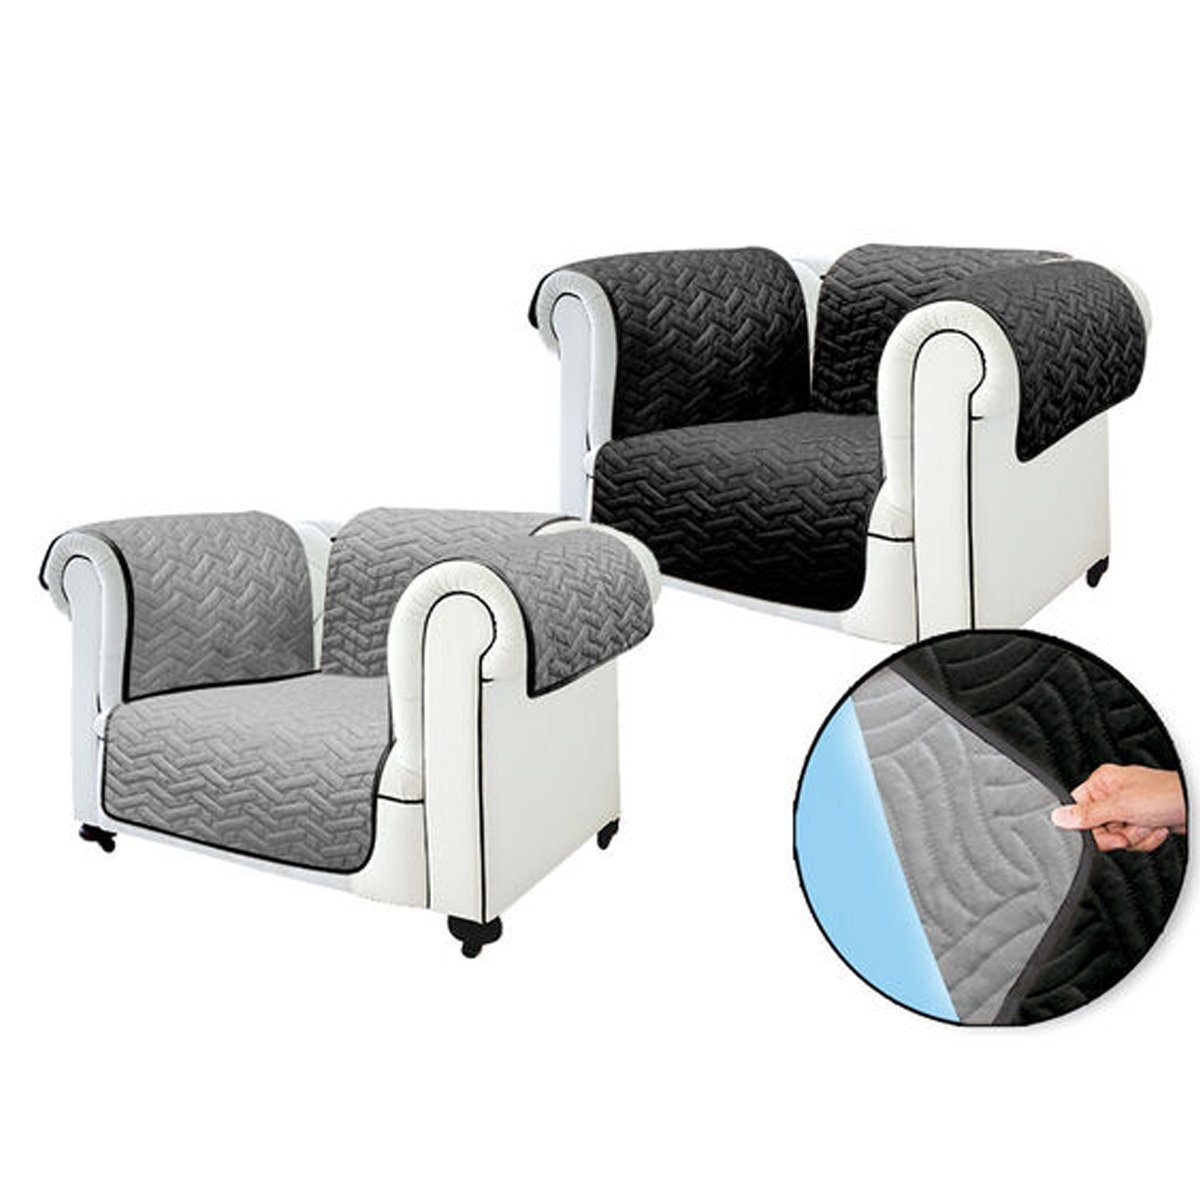 Sofaschoner Sofa Cover Sofahusse Starlyf, wasserabweisend, wendbar, Sofabezug oder Sesselbezug schwarz/grau